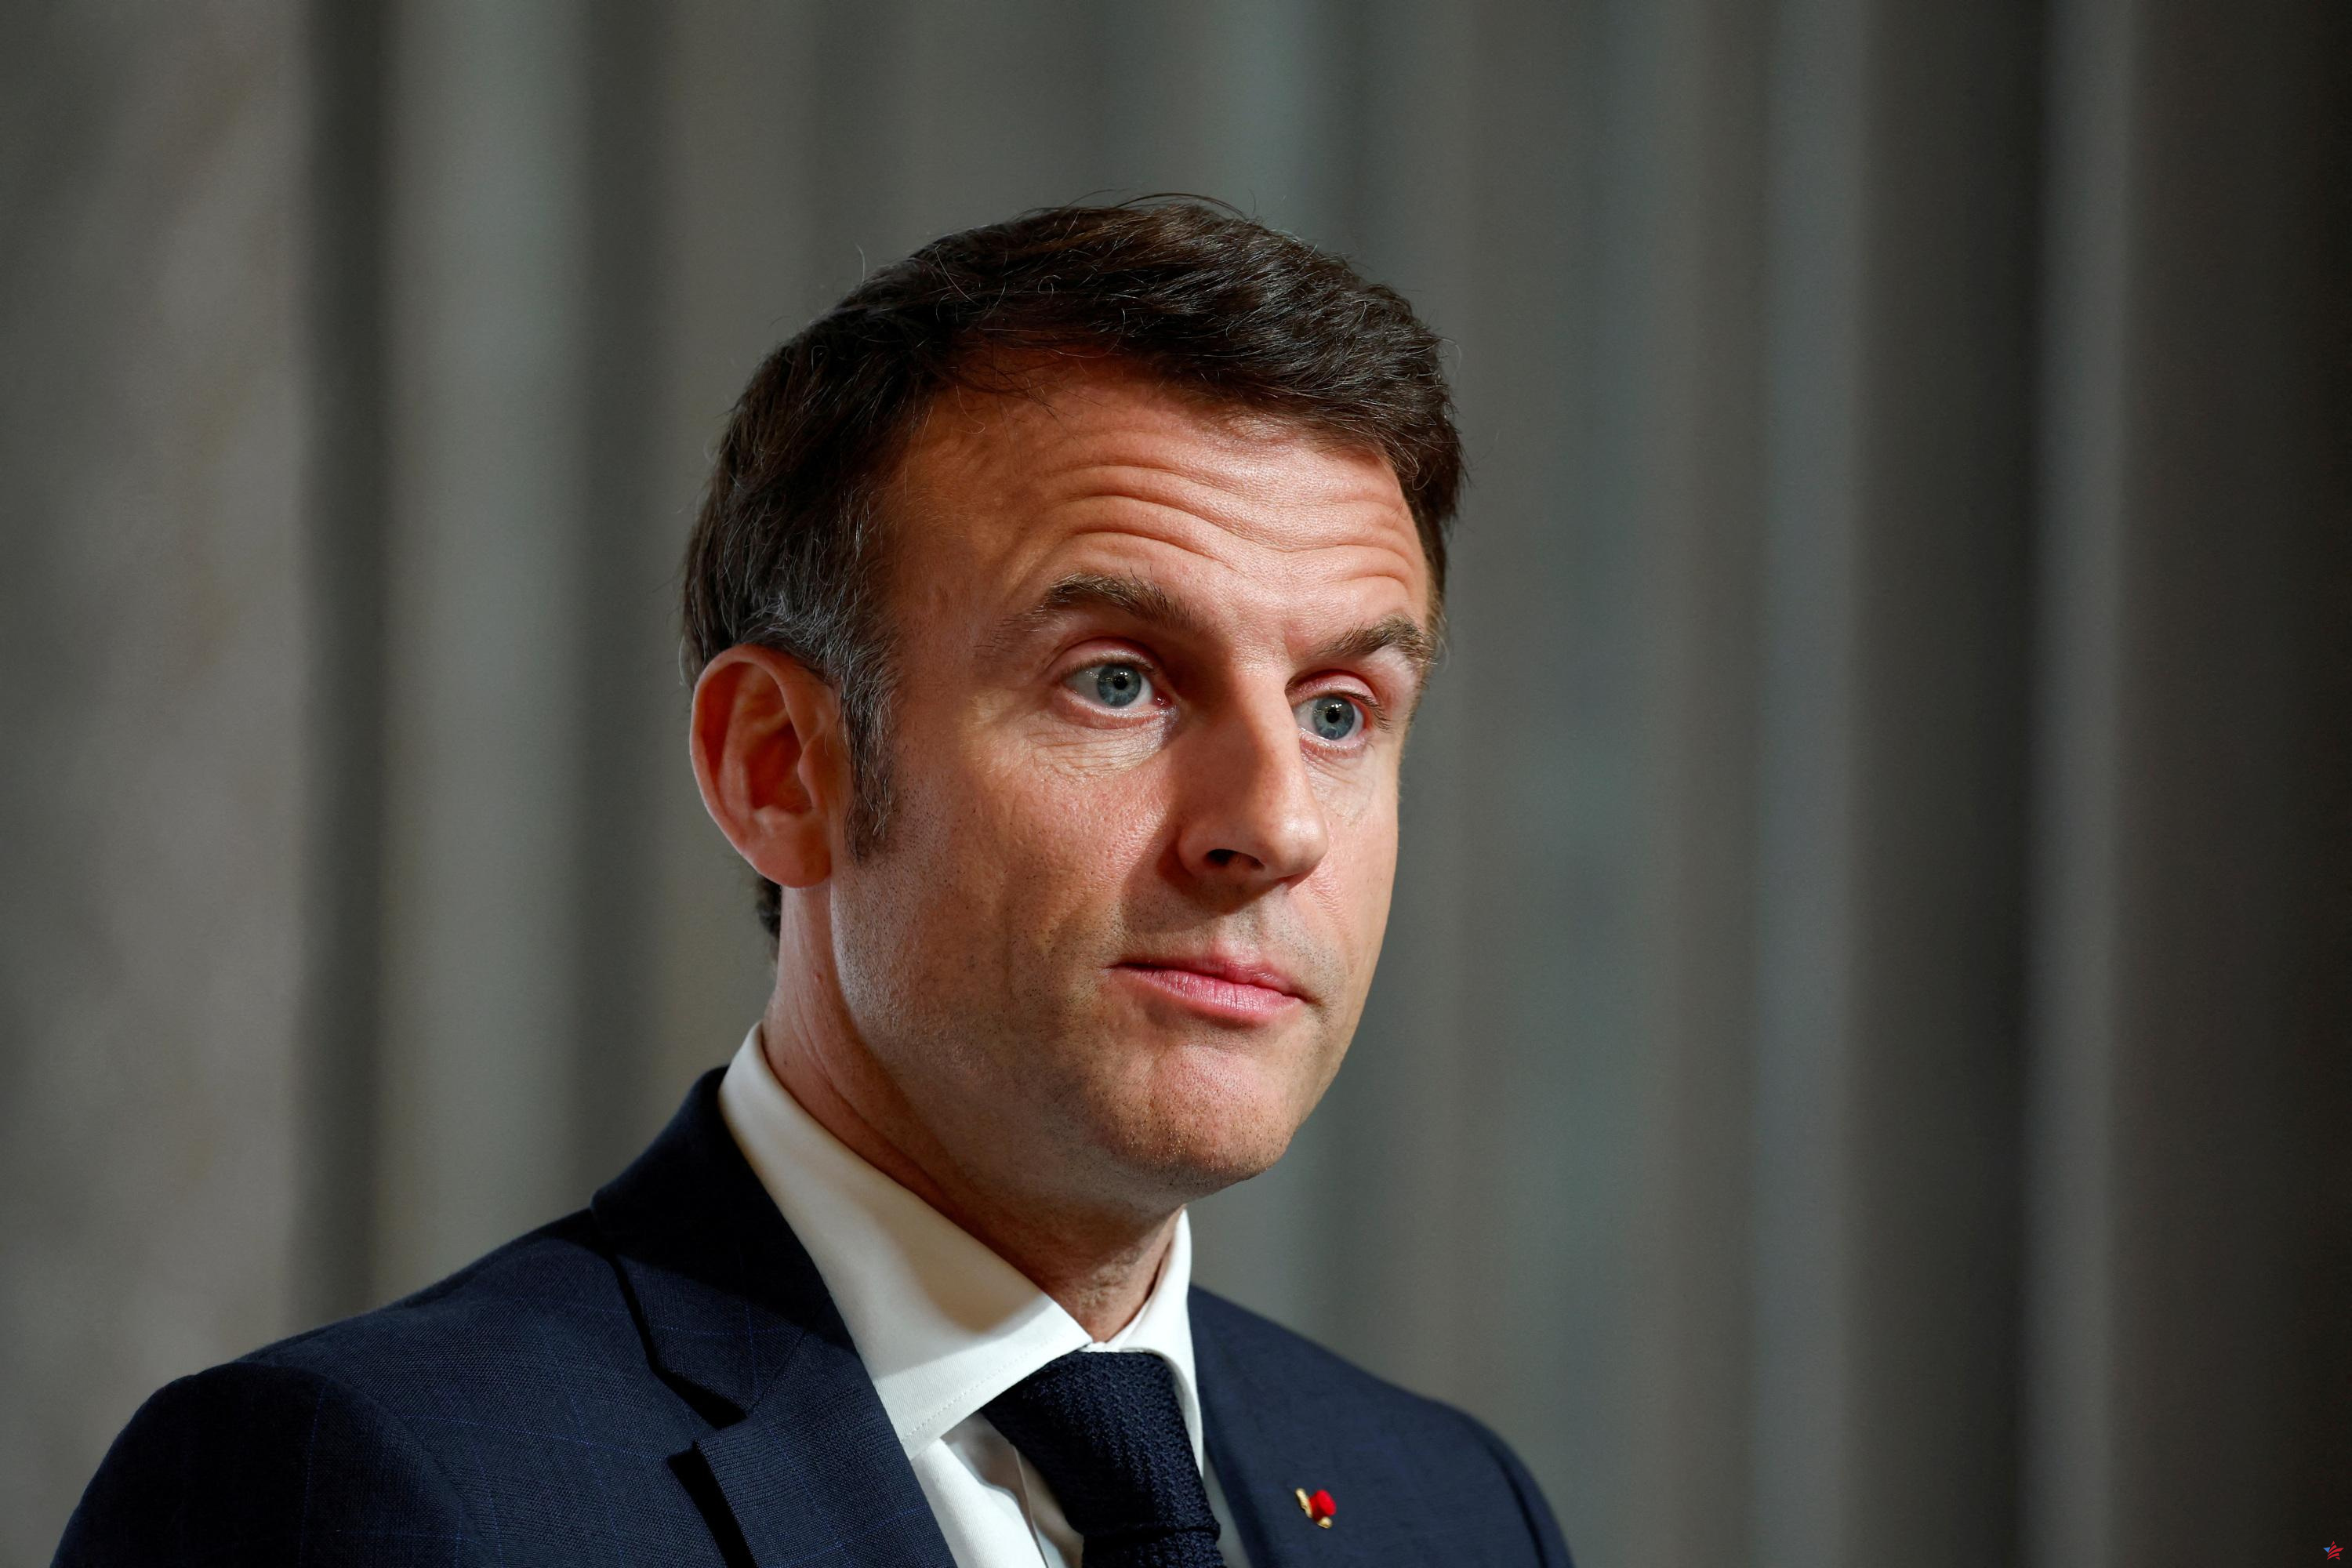 IVG en la Constitución: un “paso decisivo” juzga Macron, “se ha roto el último candado” para la izquierda